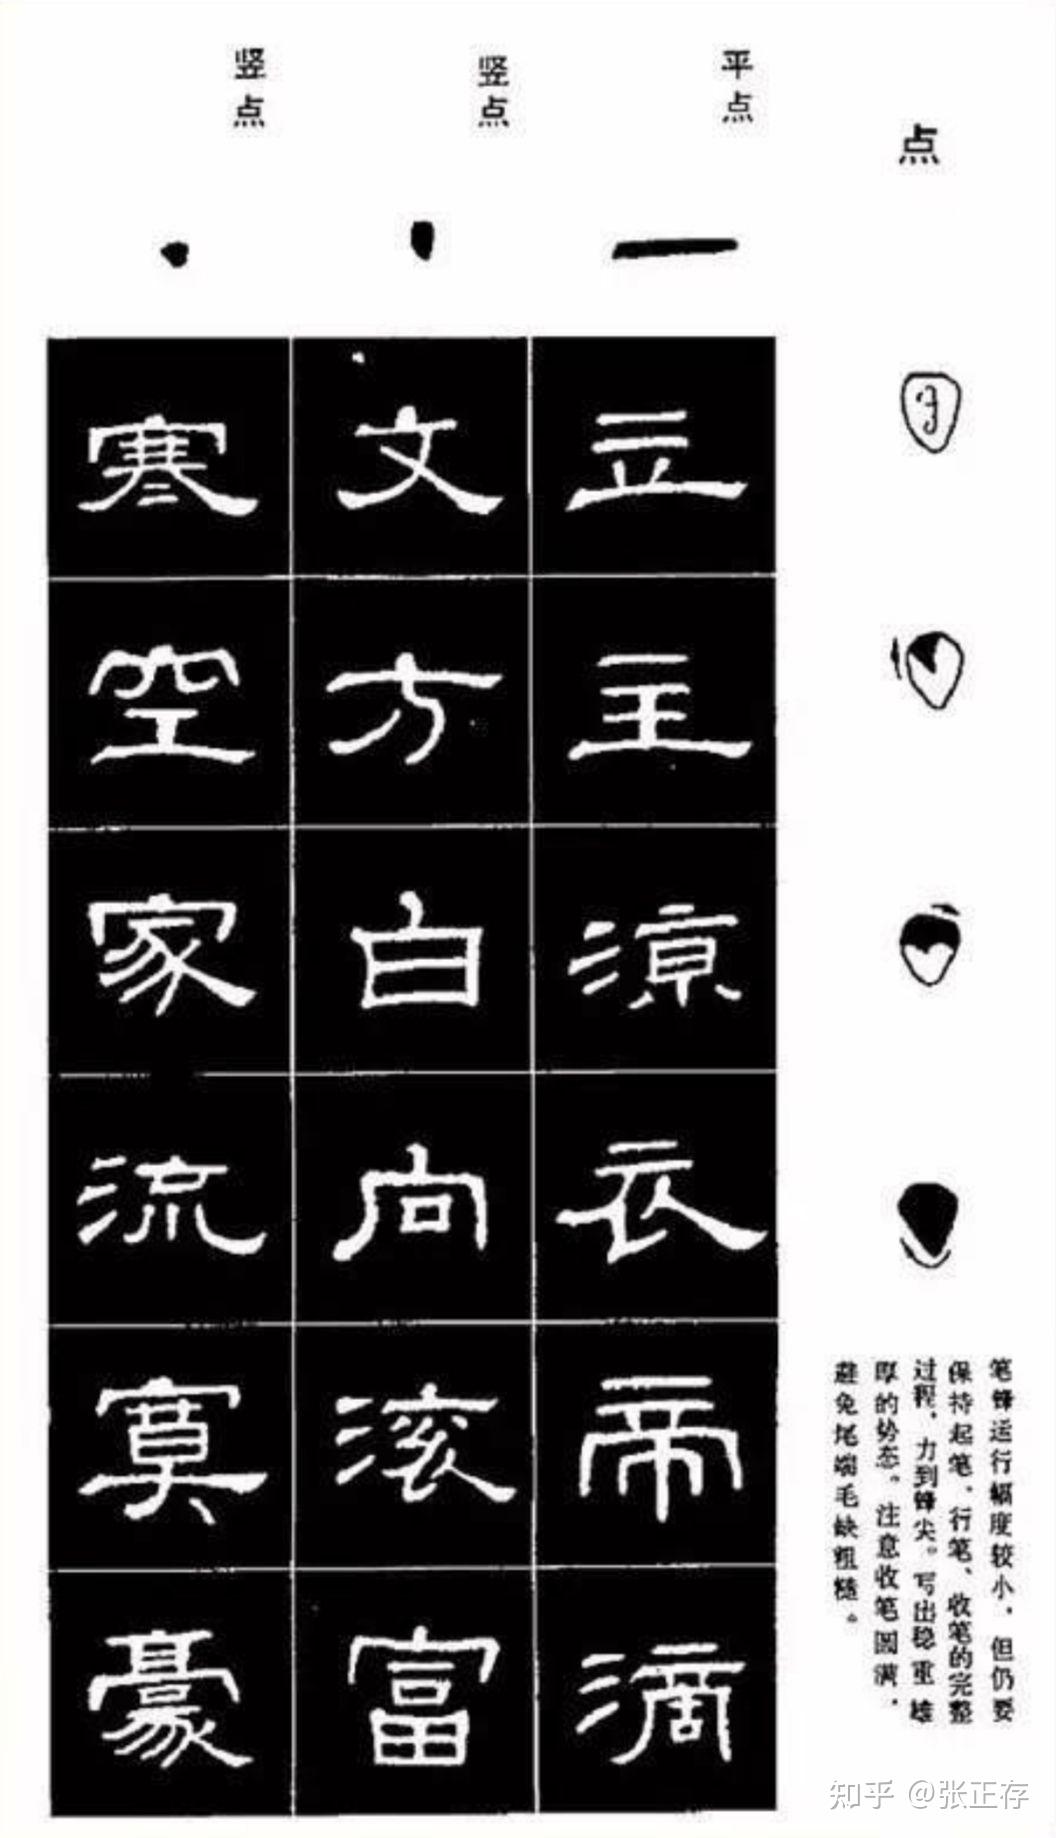 隶书是从篆书演变而来的,使汉字从原来的单一的笔画发展成为多变的